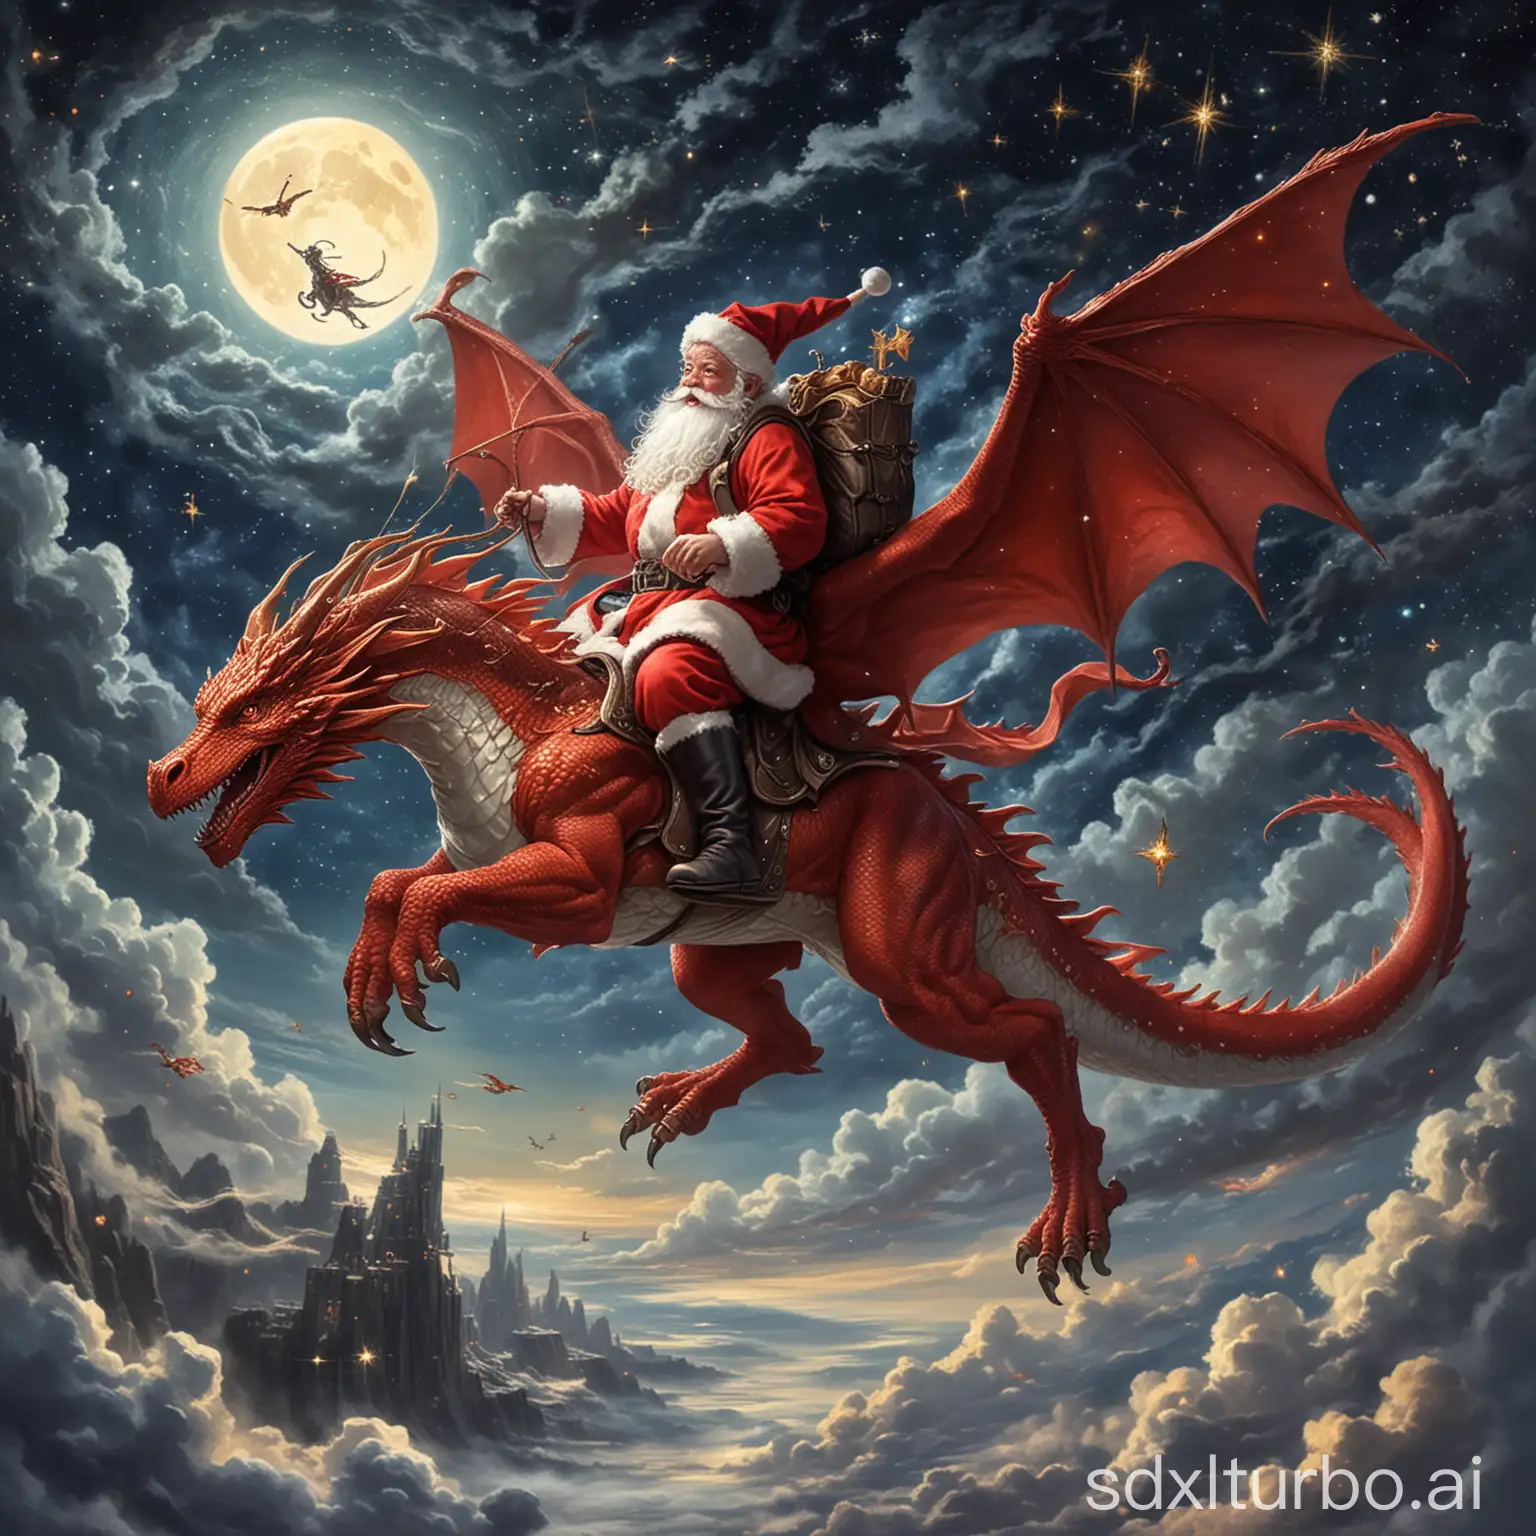 Santa, wie er auf einem glitzernden Flugdrachen reitet, der ihn hoch in den Nachthimmel trägt, wo die Sterne seine einzigen Begleiter sind.